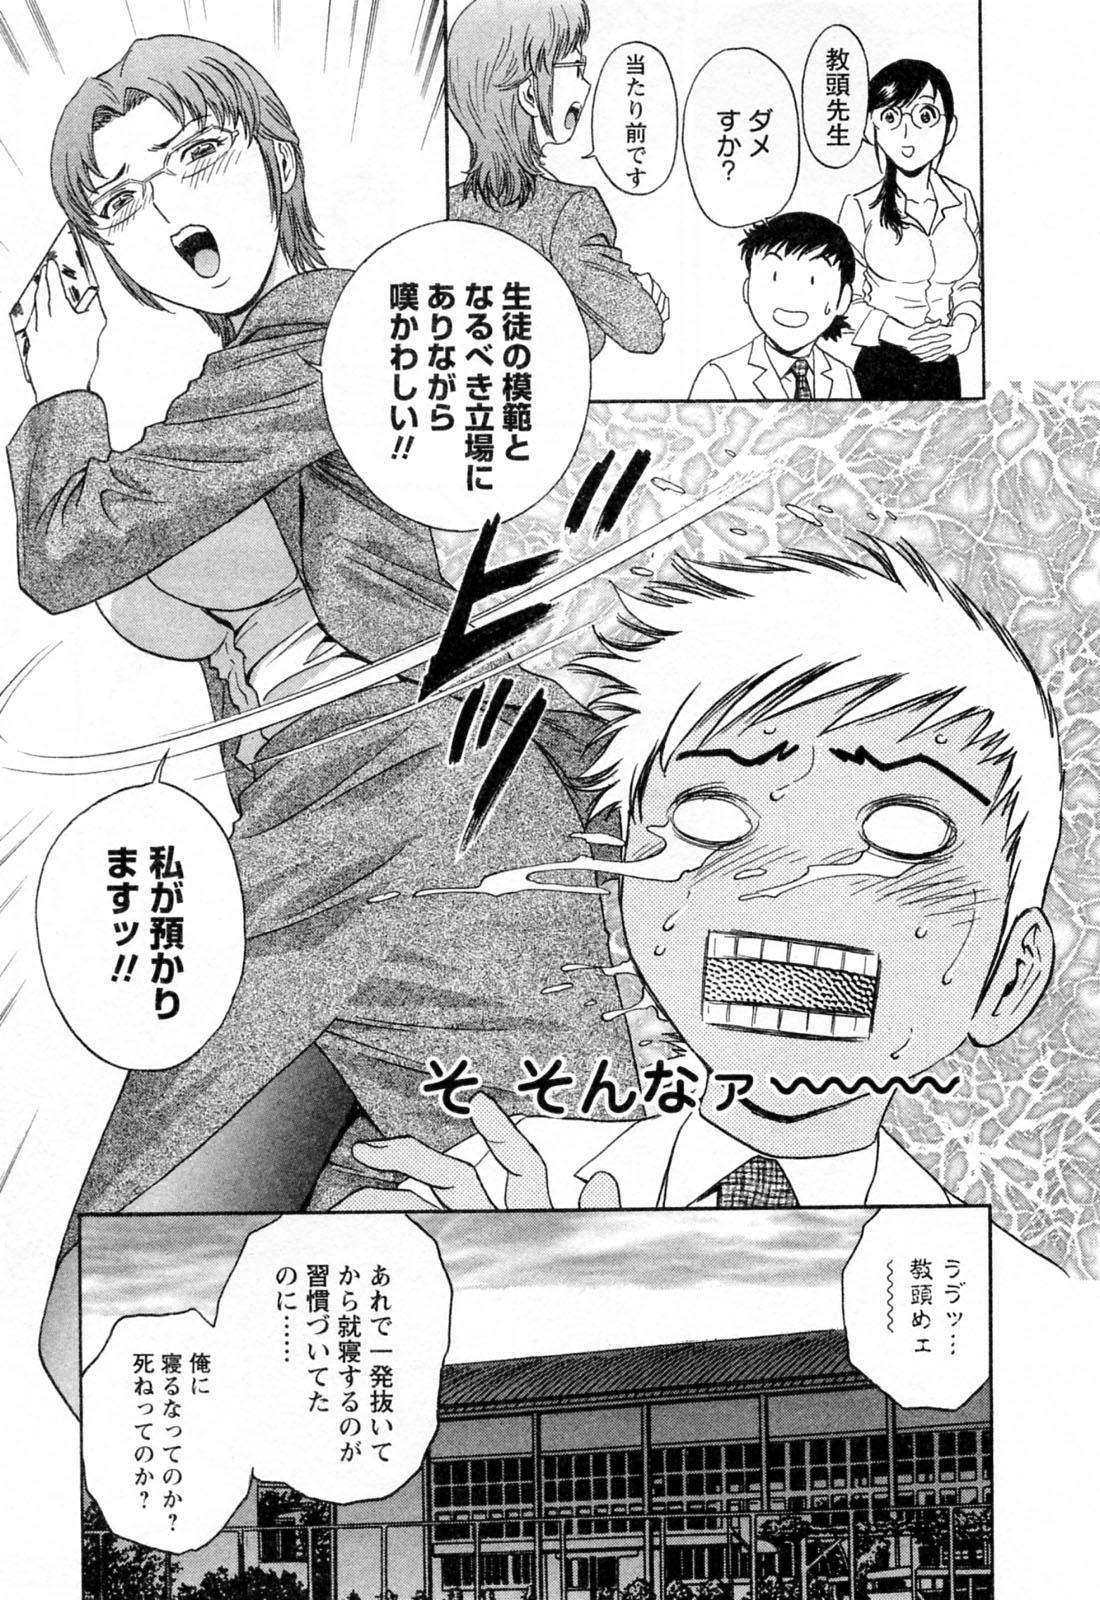 [Hidemaru] Mo-Retsu! Boin Sensei (Boing Boing Teacher) Vol.4 14